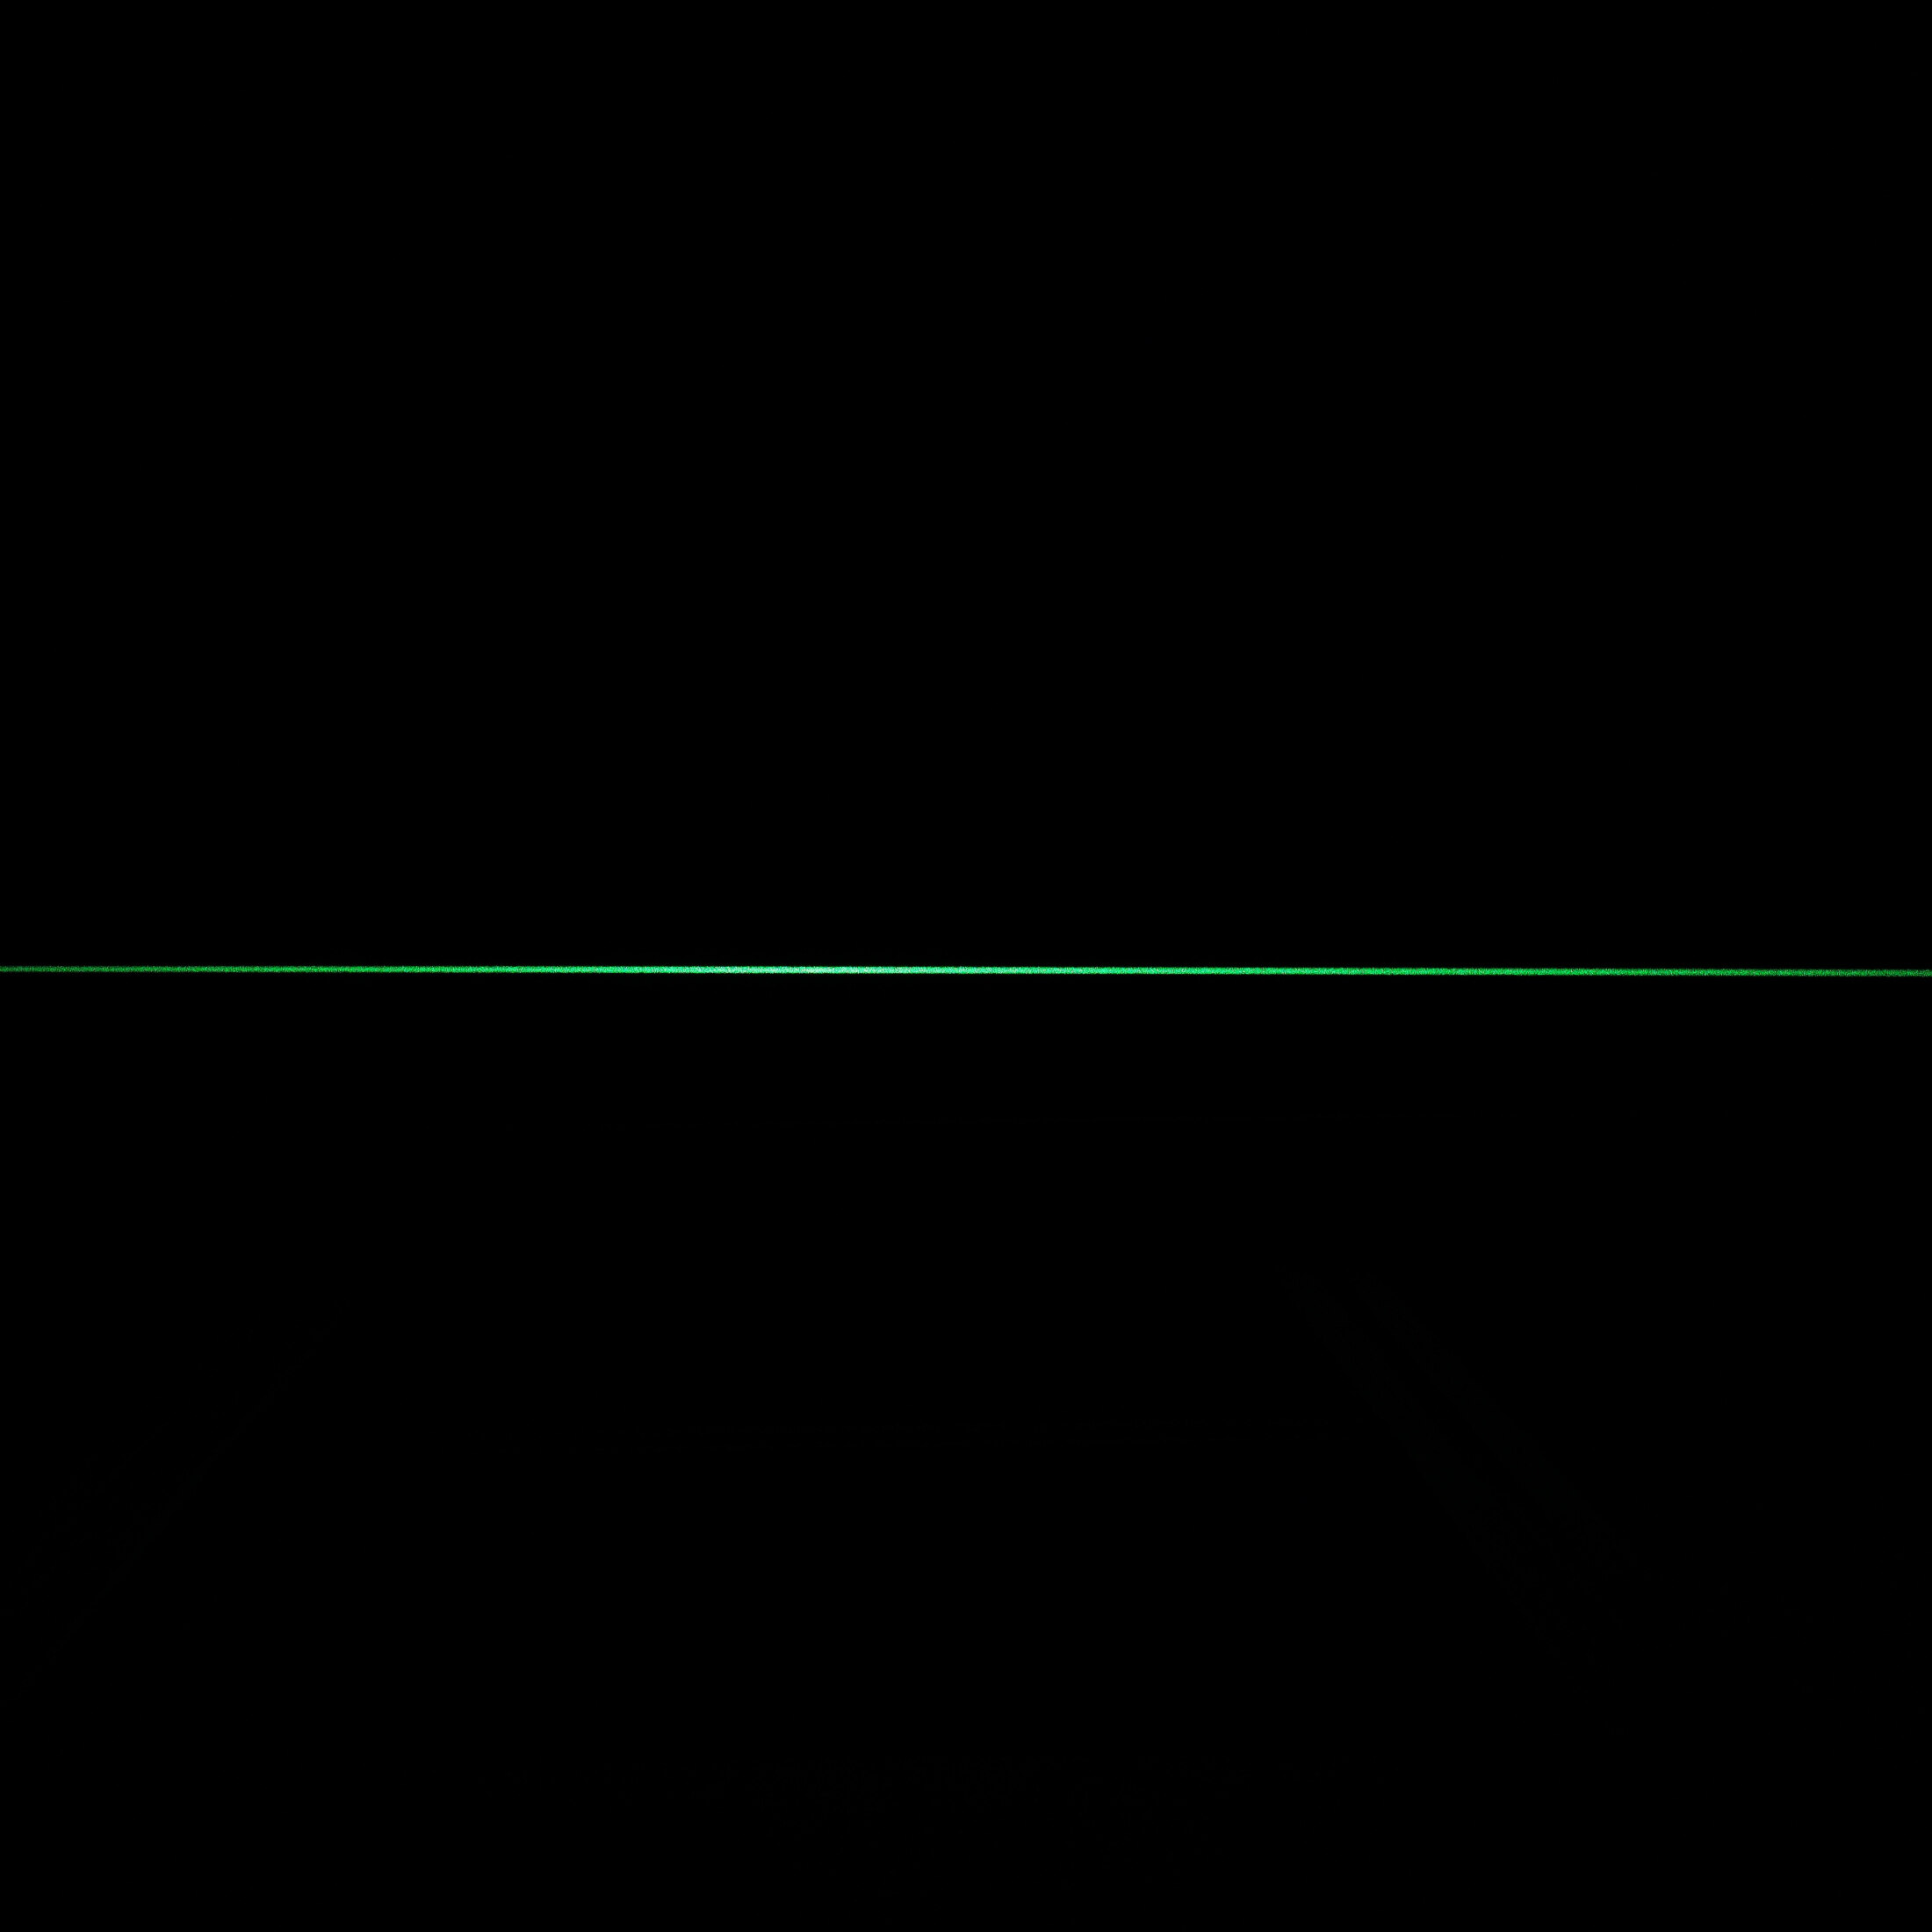 Picotronic Linienlaser grün, 520nm, 90°, 24V DC, Ø20x135 mm, Fokus einstellbar, Laserklasse 2M